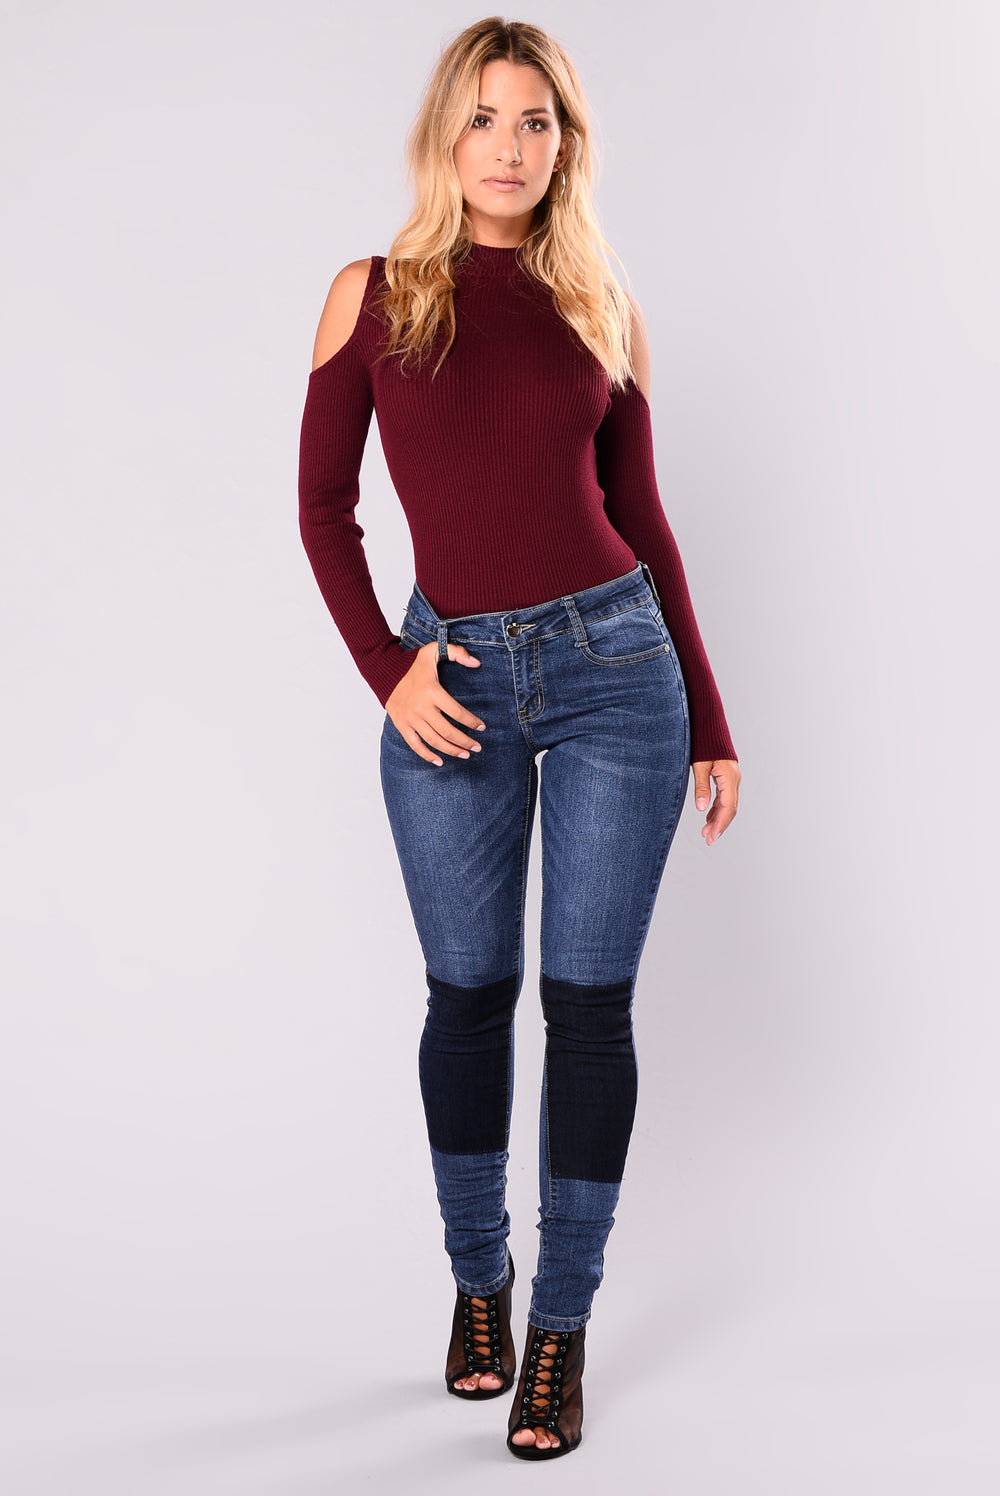 Carolina Cold Shoulder Sweater - Burgundy